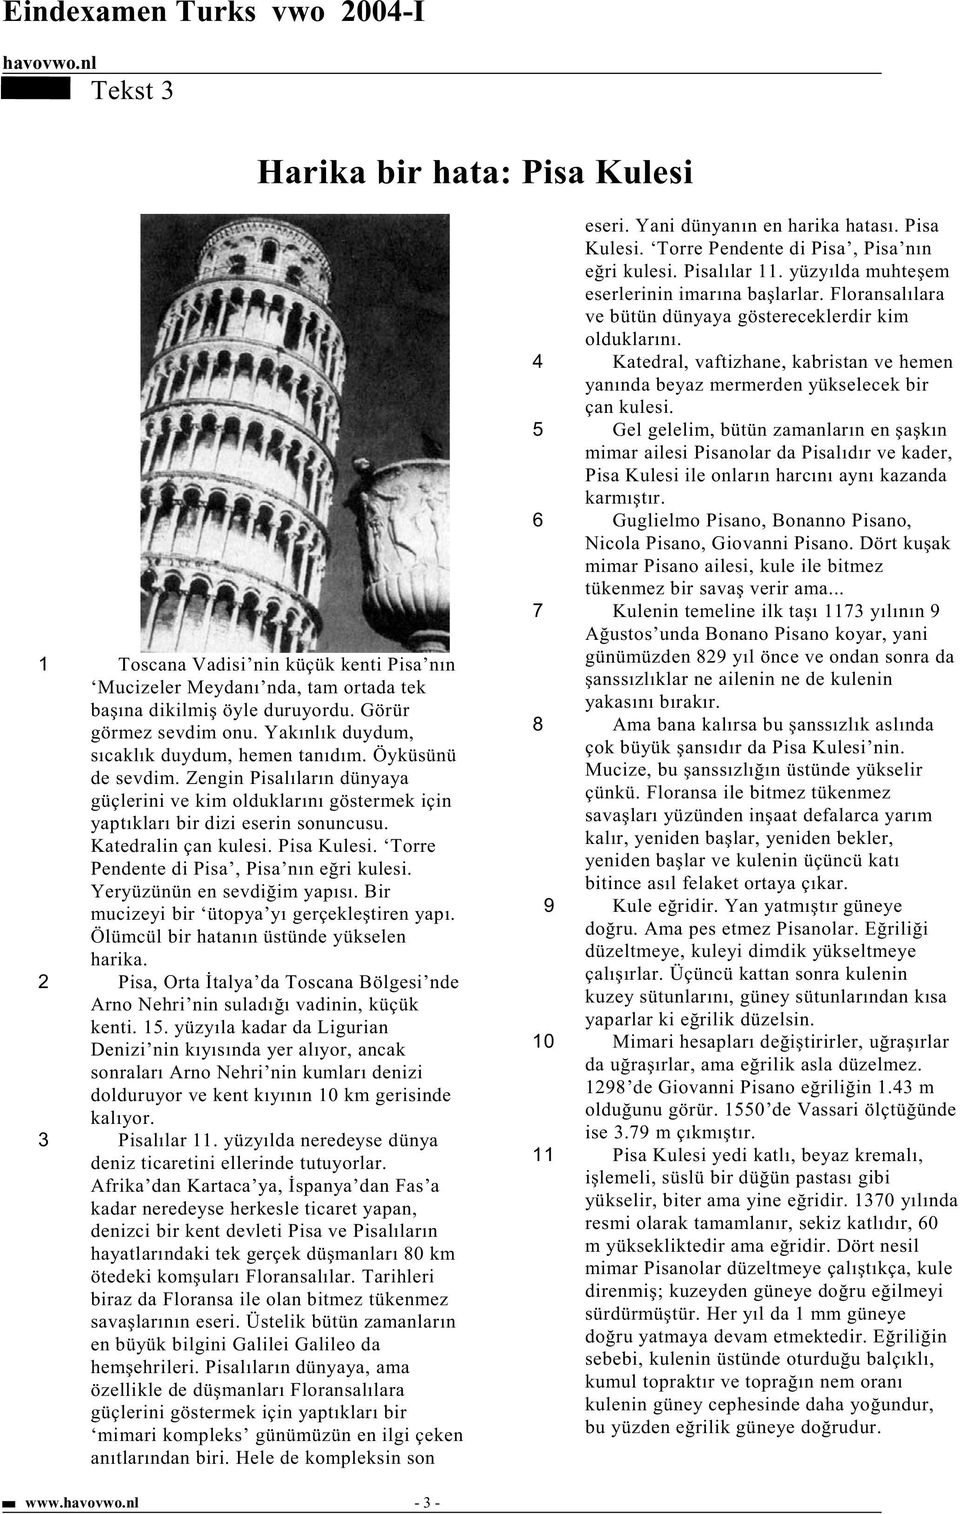 Pisa Kulesi. Torre Pendente di Pisa, Pisa nın e ri kulesi. Yeryüzünün en sevdi im yapısı. Bir mucizeyi bir ütopya yı gerçekle tiren yapı. Ölümcül bir hatanın üstünde yükselen harika.